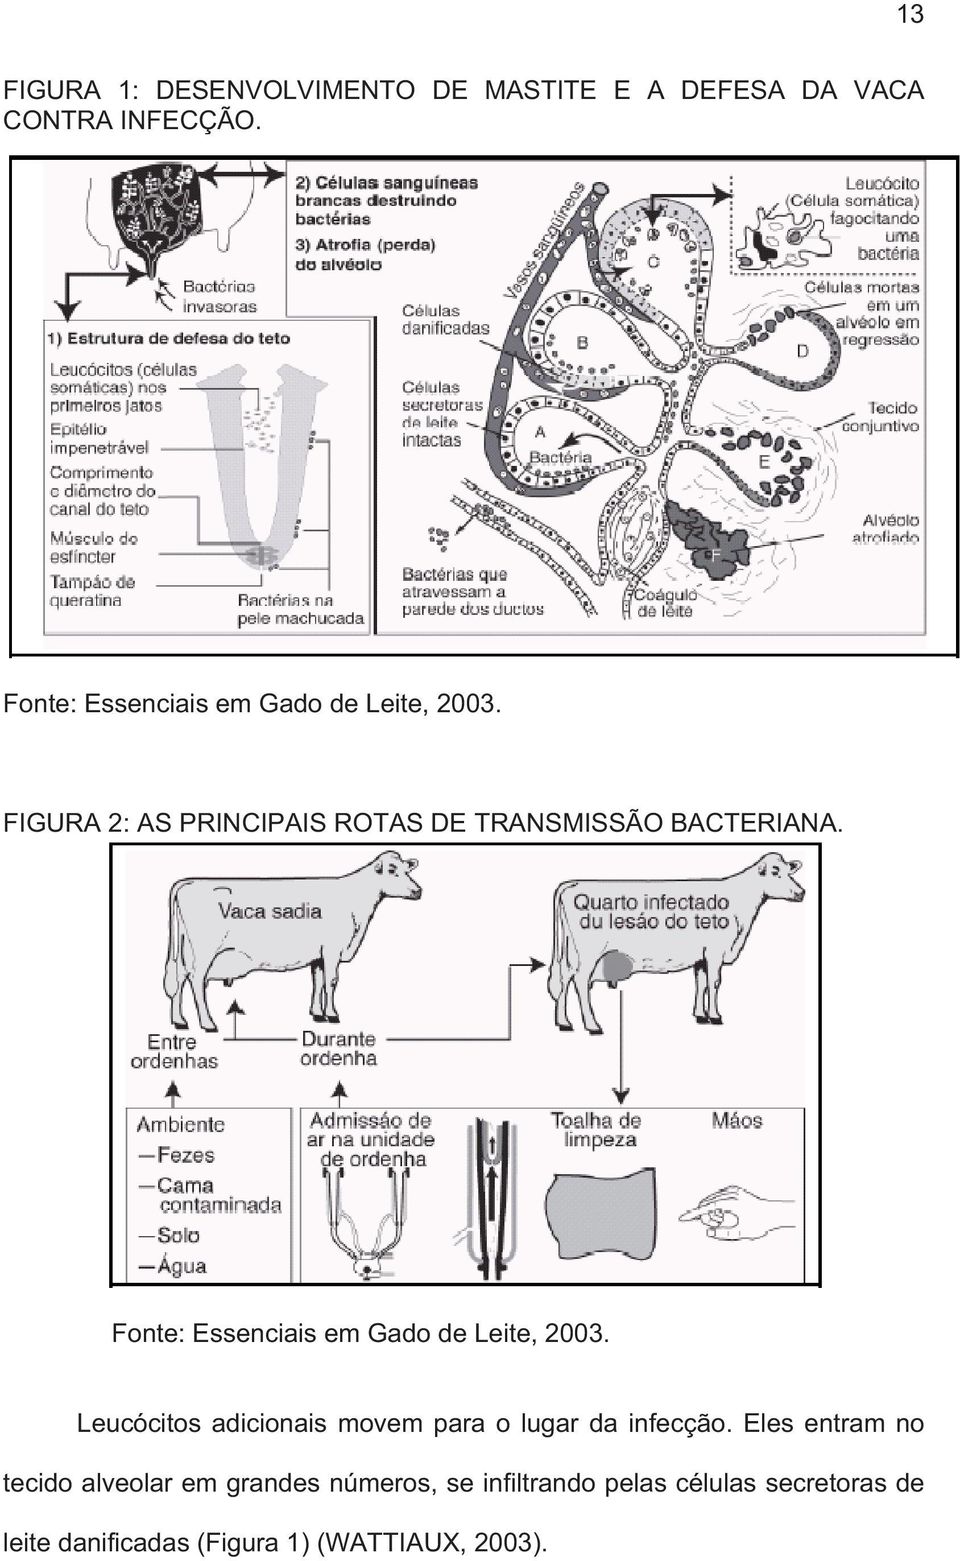 Fonte: Essenciais em Gado de Leite, 2003. Leucócitos adicionais movem para o lugar da infecção.